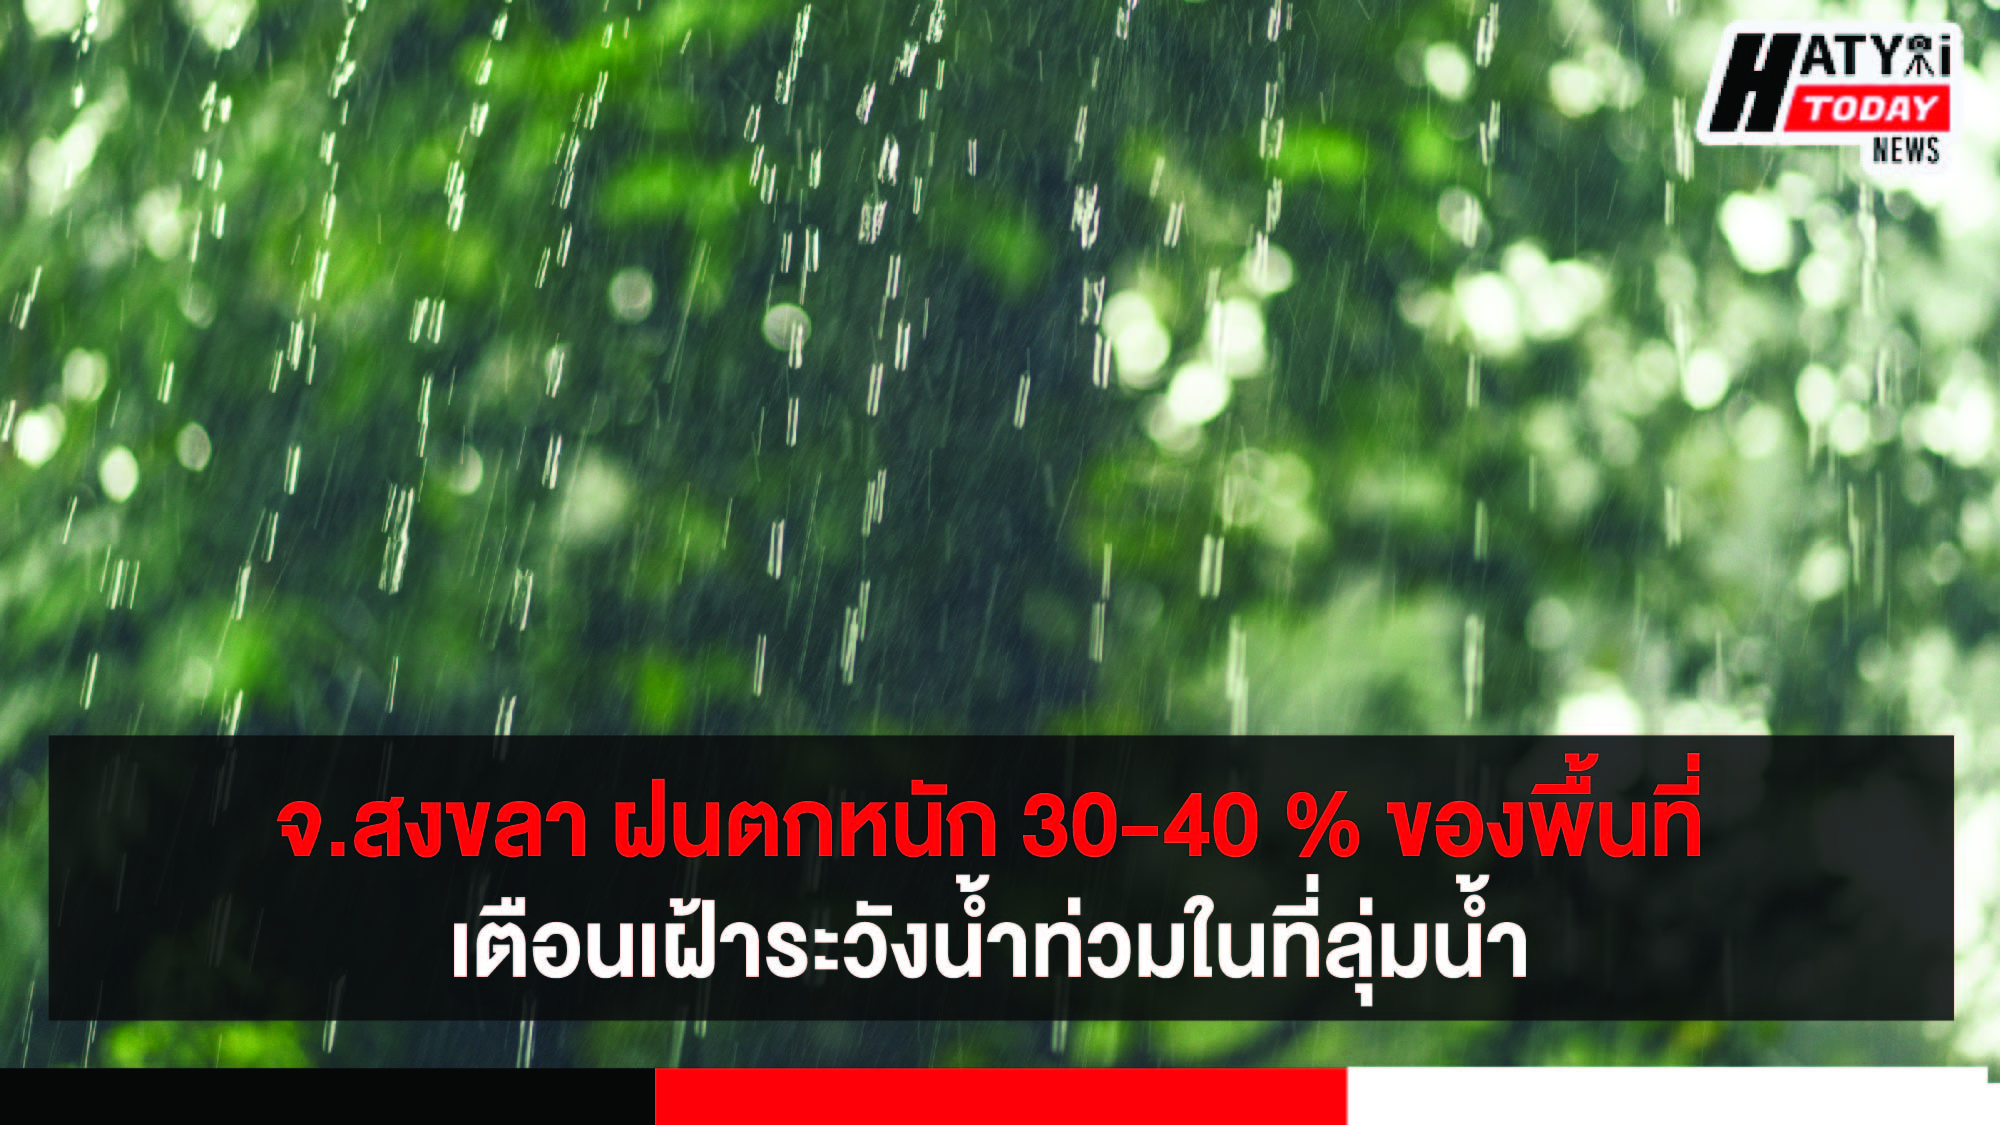 จ.สงขลา ฝนตกหนัก 30-40 % ของพื้นที่เตือนเฝ้าระวังน้ำท่วมในที่ลุ่มน้ำ